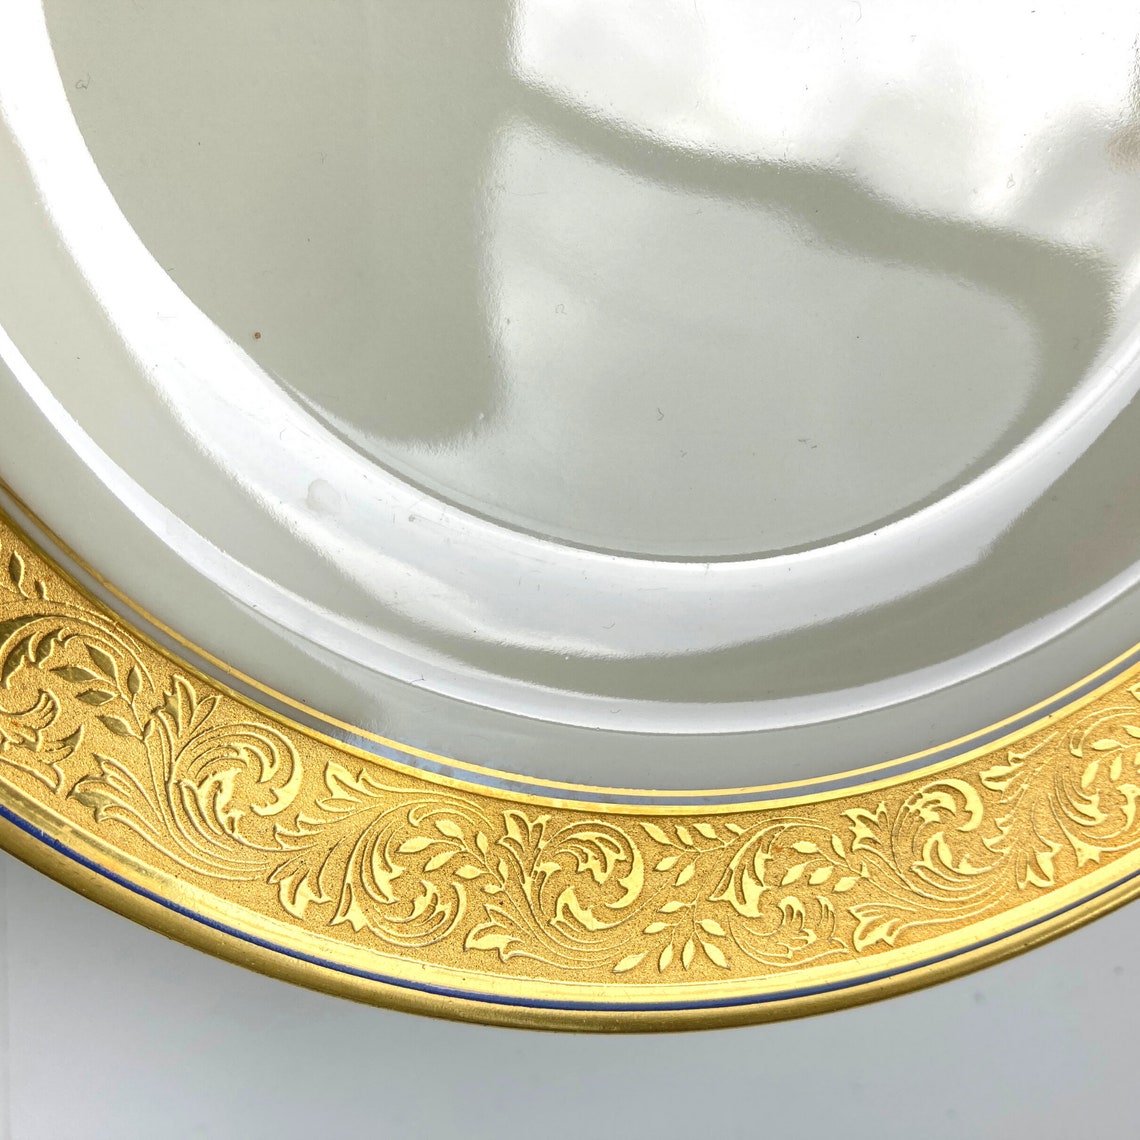 Pirkenhammer Porcelain Dinner Plates Cream and 24K Gold - Etsy